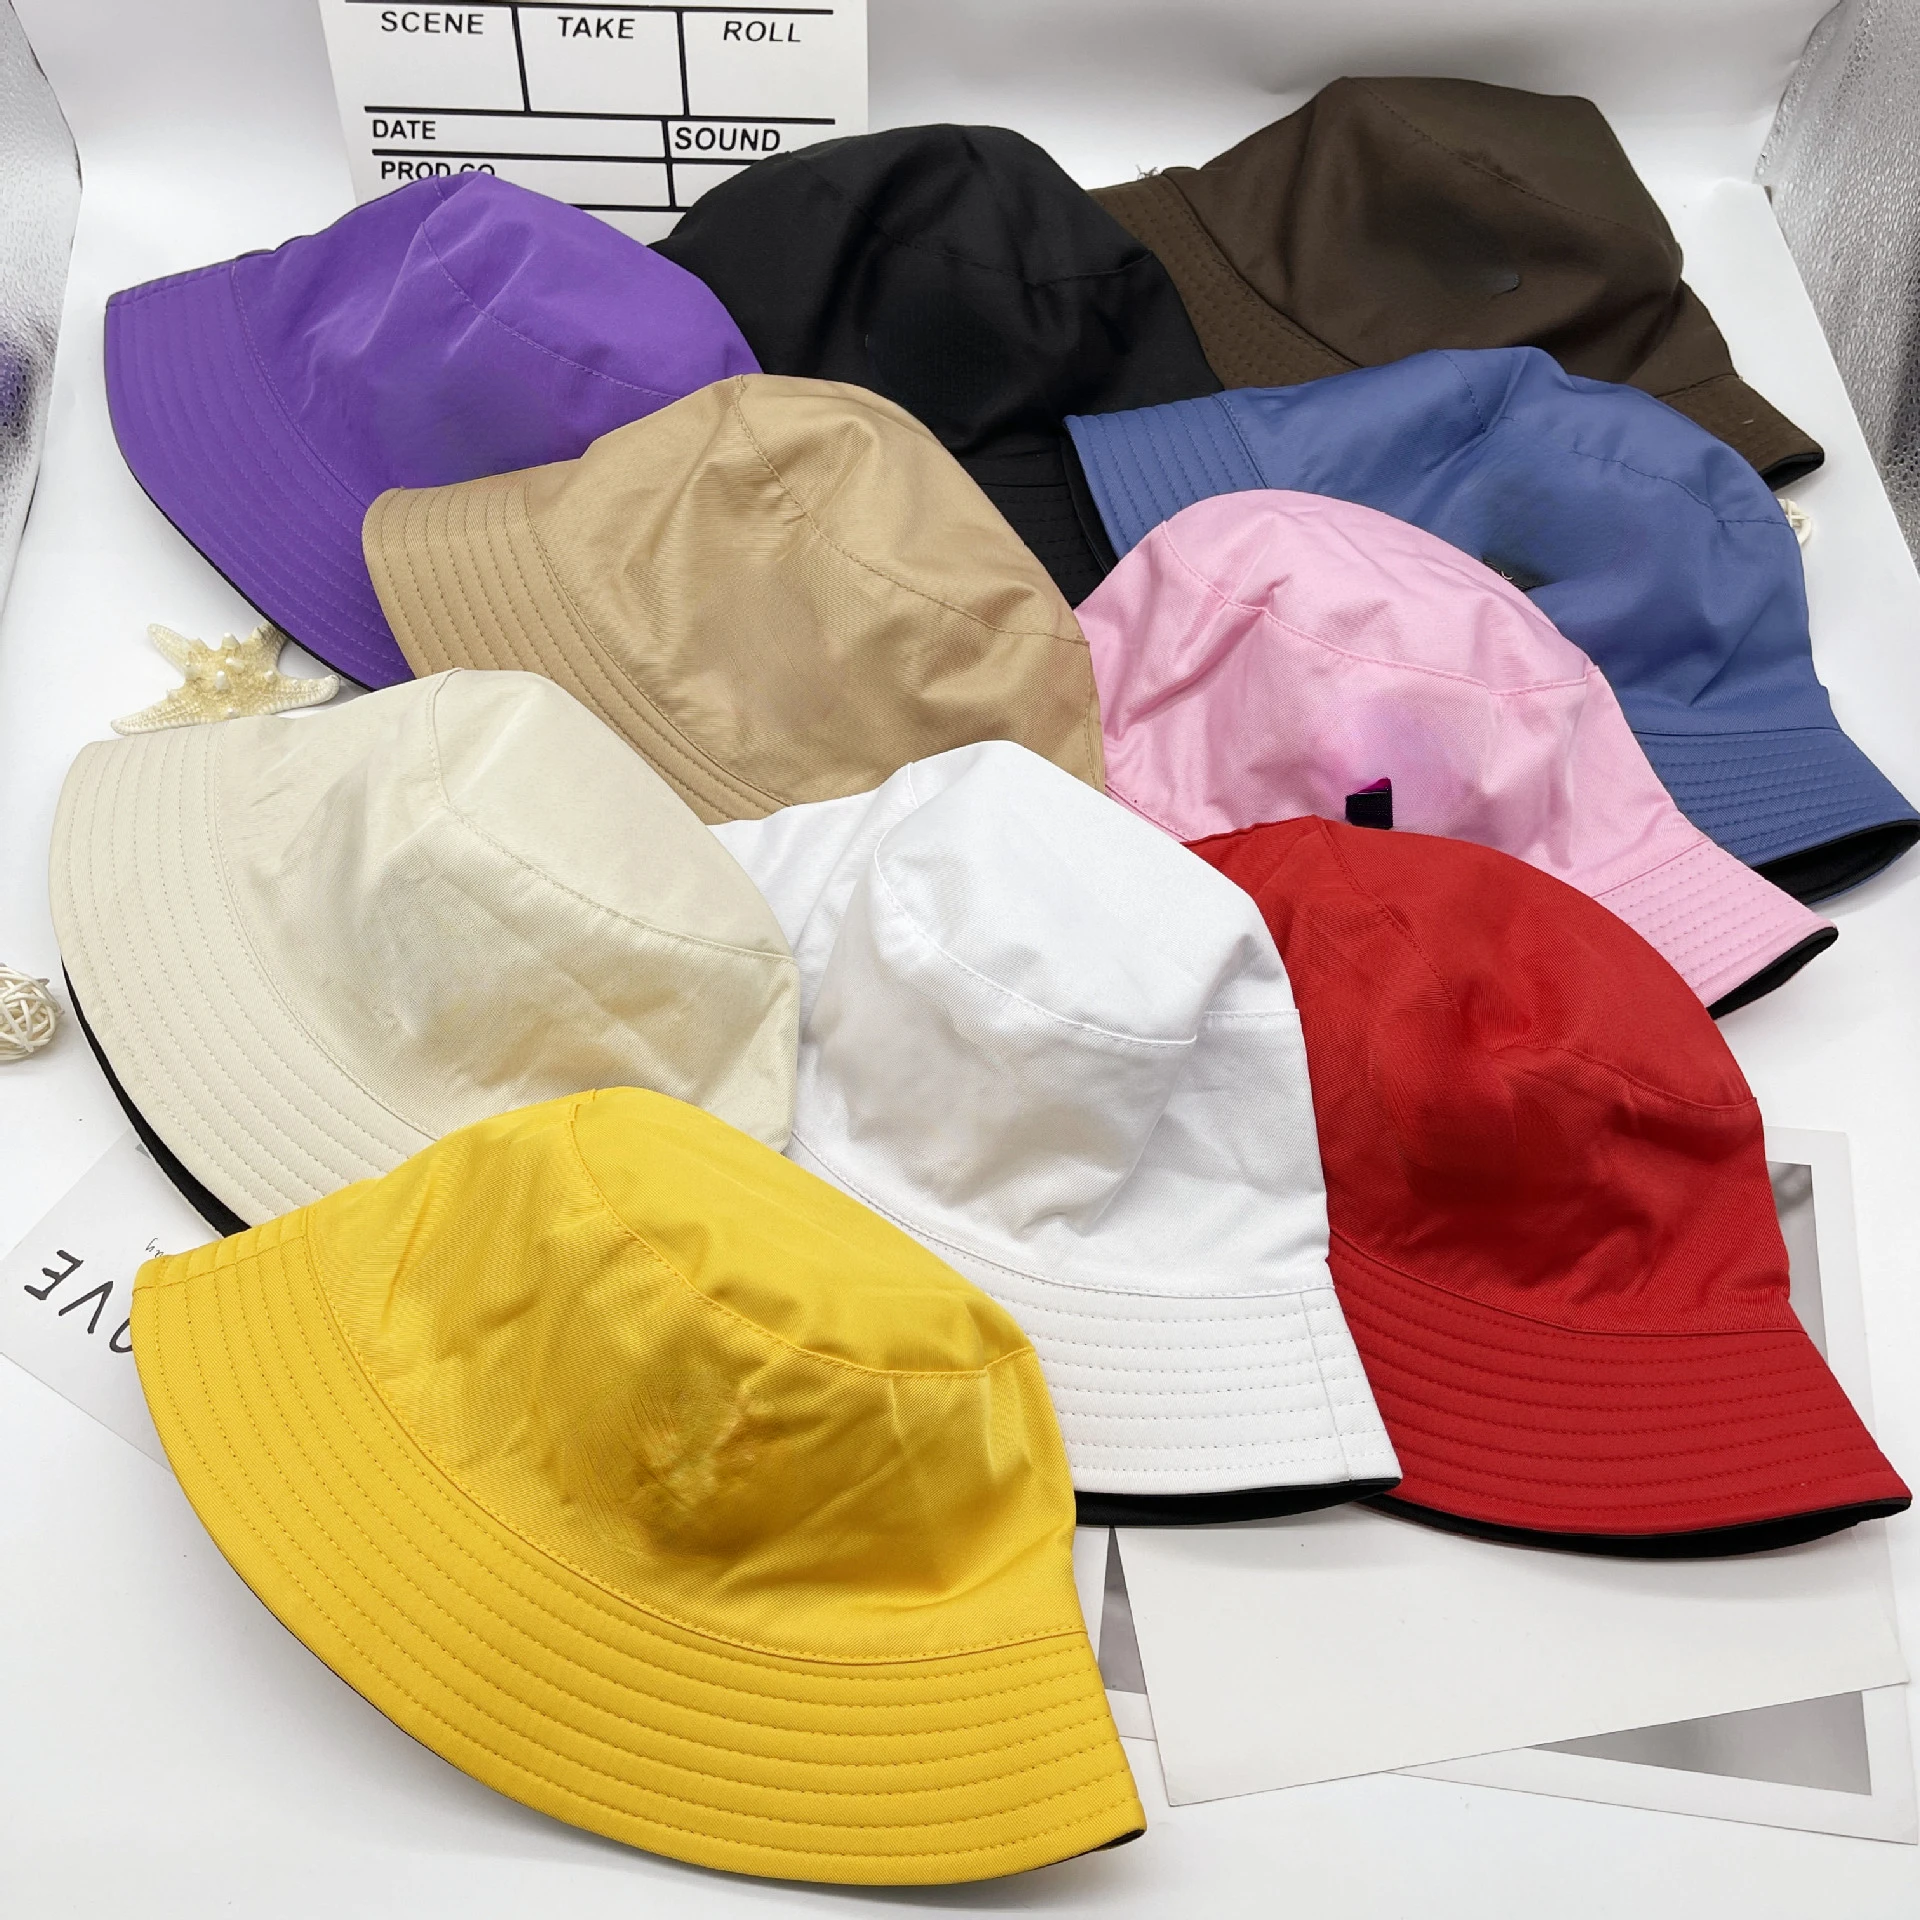 designer bucket hats for women